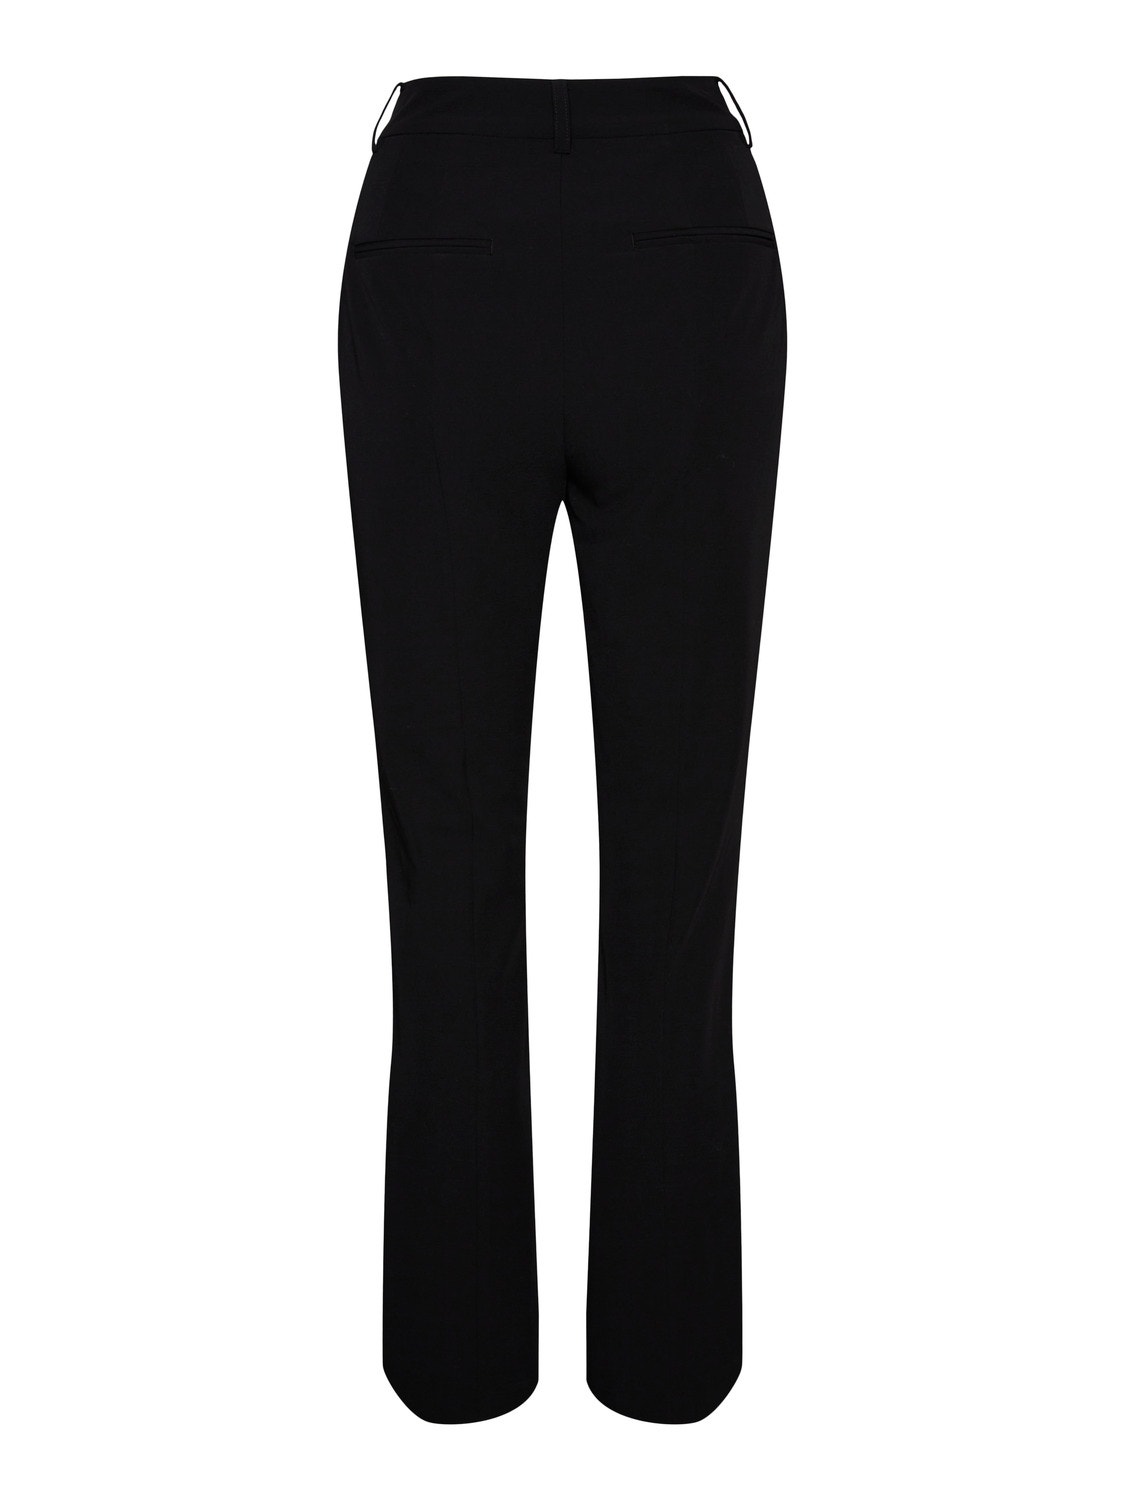 Vero Moda VMALIA High rise Trousers -Black - 10246696